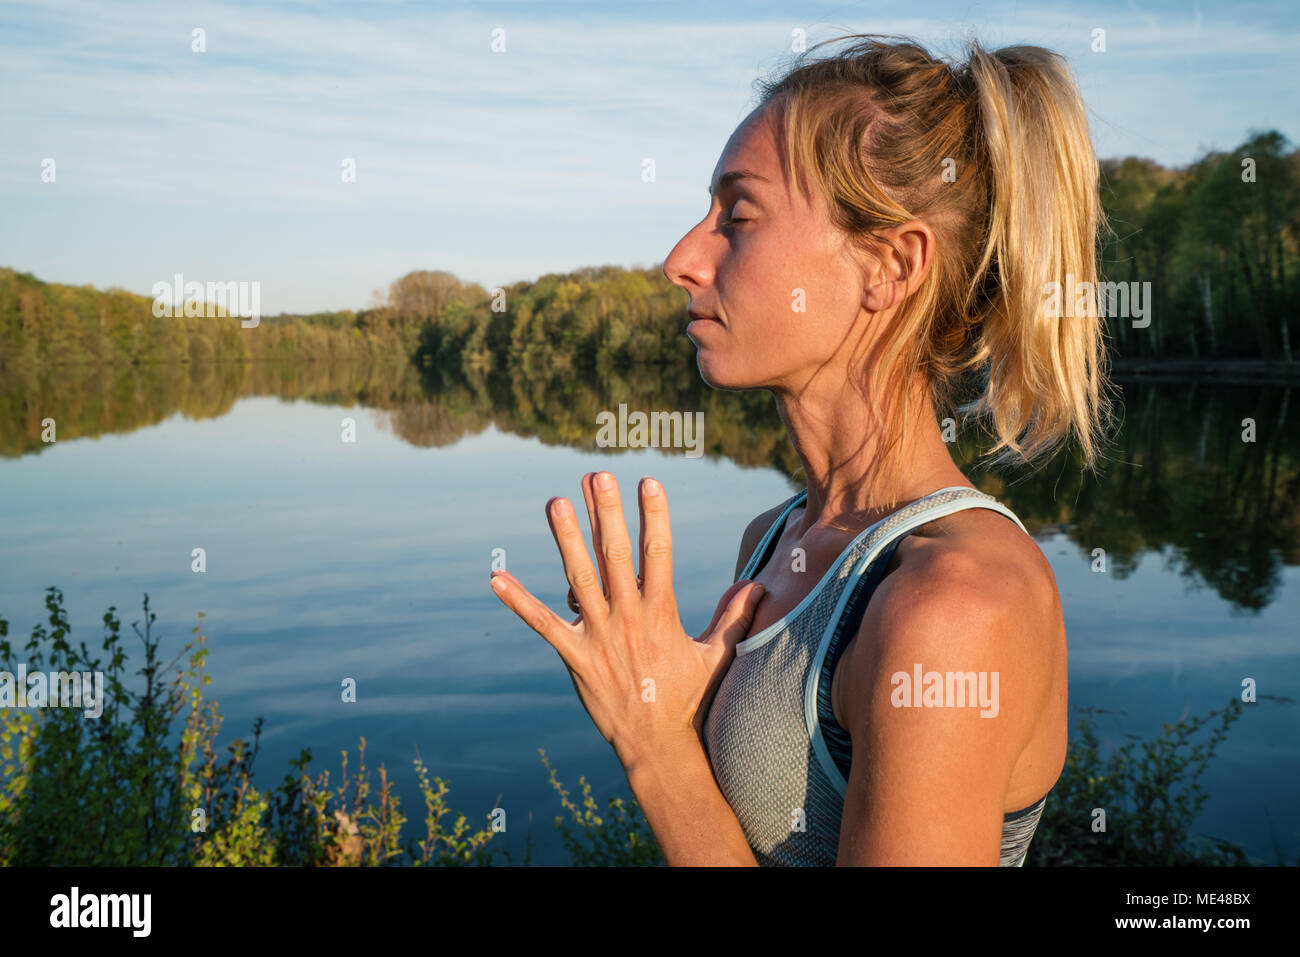 Junge Frau trainieren Yoga am See bei Sonnenuntergang, menschen natur Wohlbefinden und Entspannung Konzept reisen. In Frankreich, Europa erschossen. Händen zum Herz Stockfoto